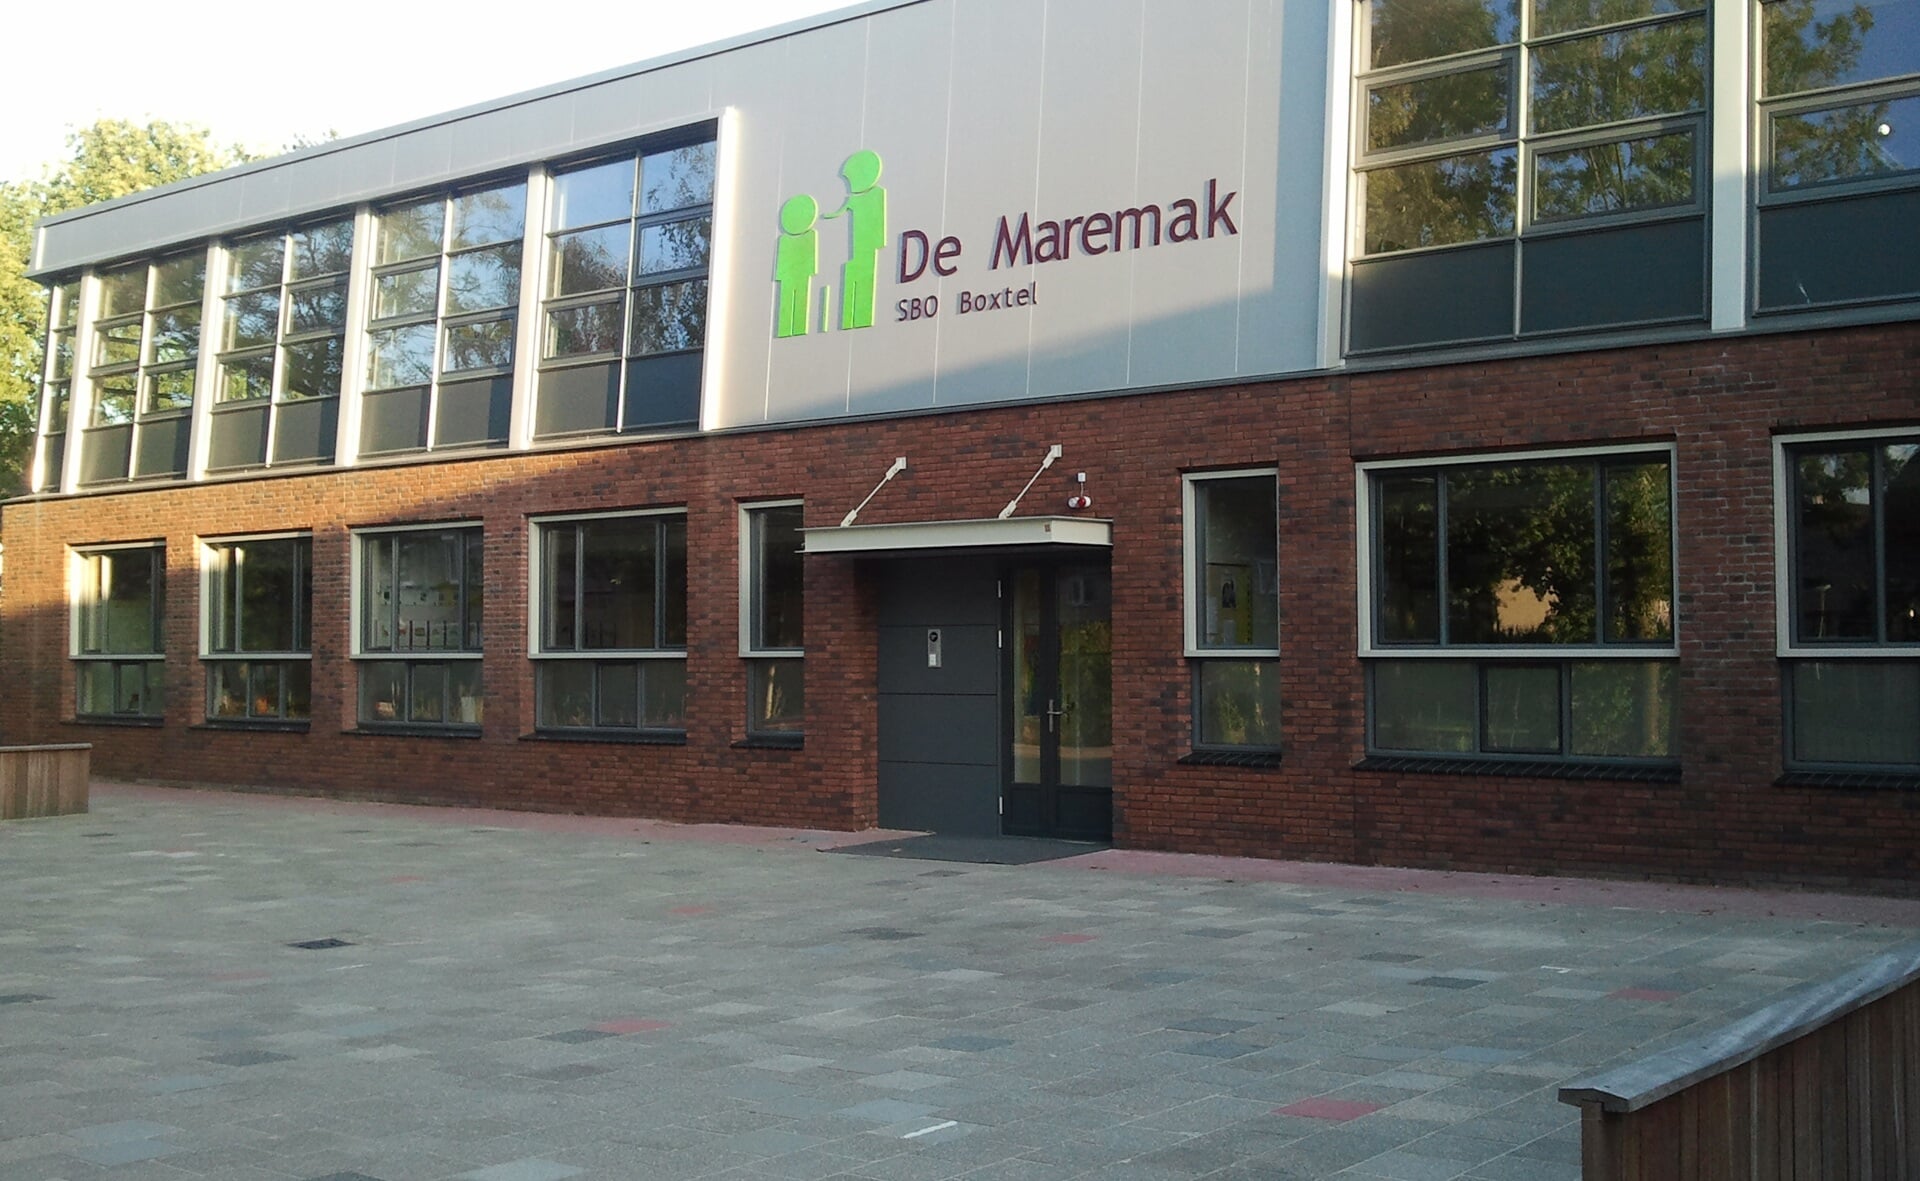 Het vijf jaar geleden in gebruik genomen gebouw aan de Beukums wordt te groot voor sbo-school De Maremak. (Foto: Henk van Weert). 